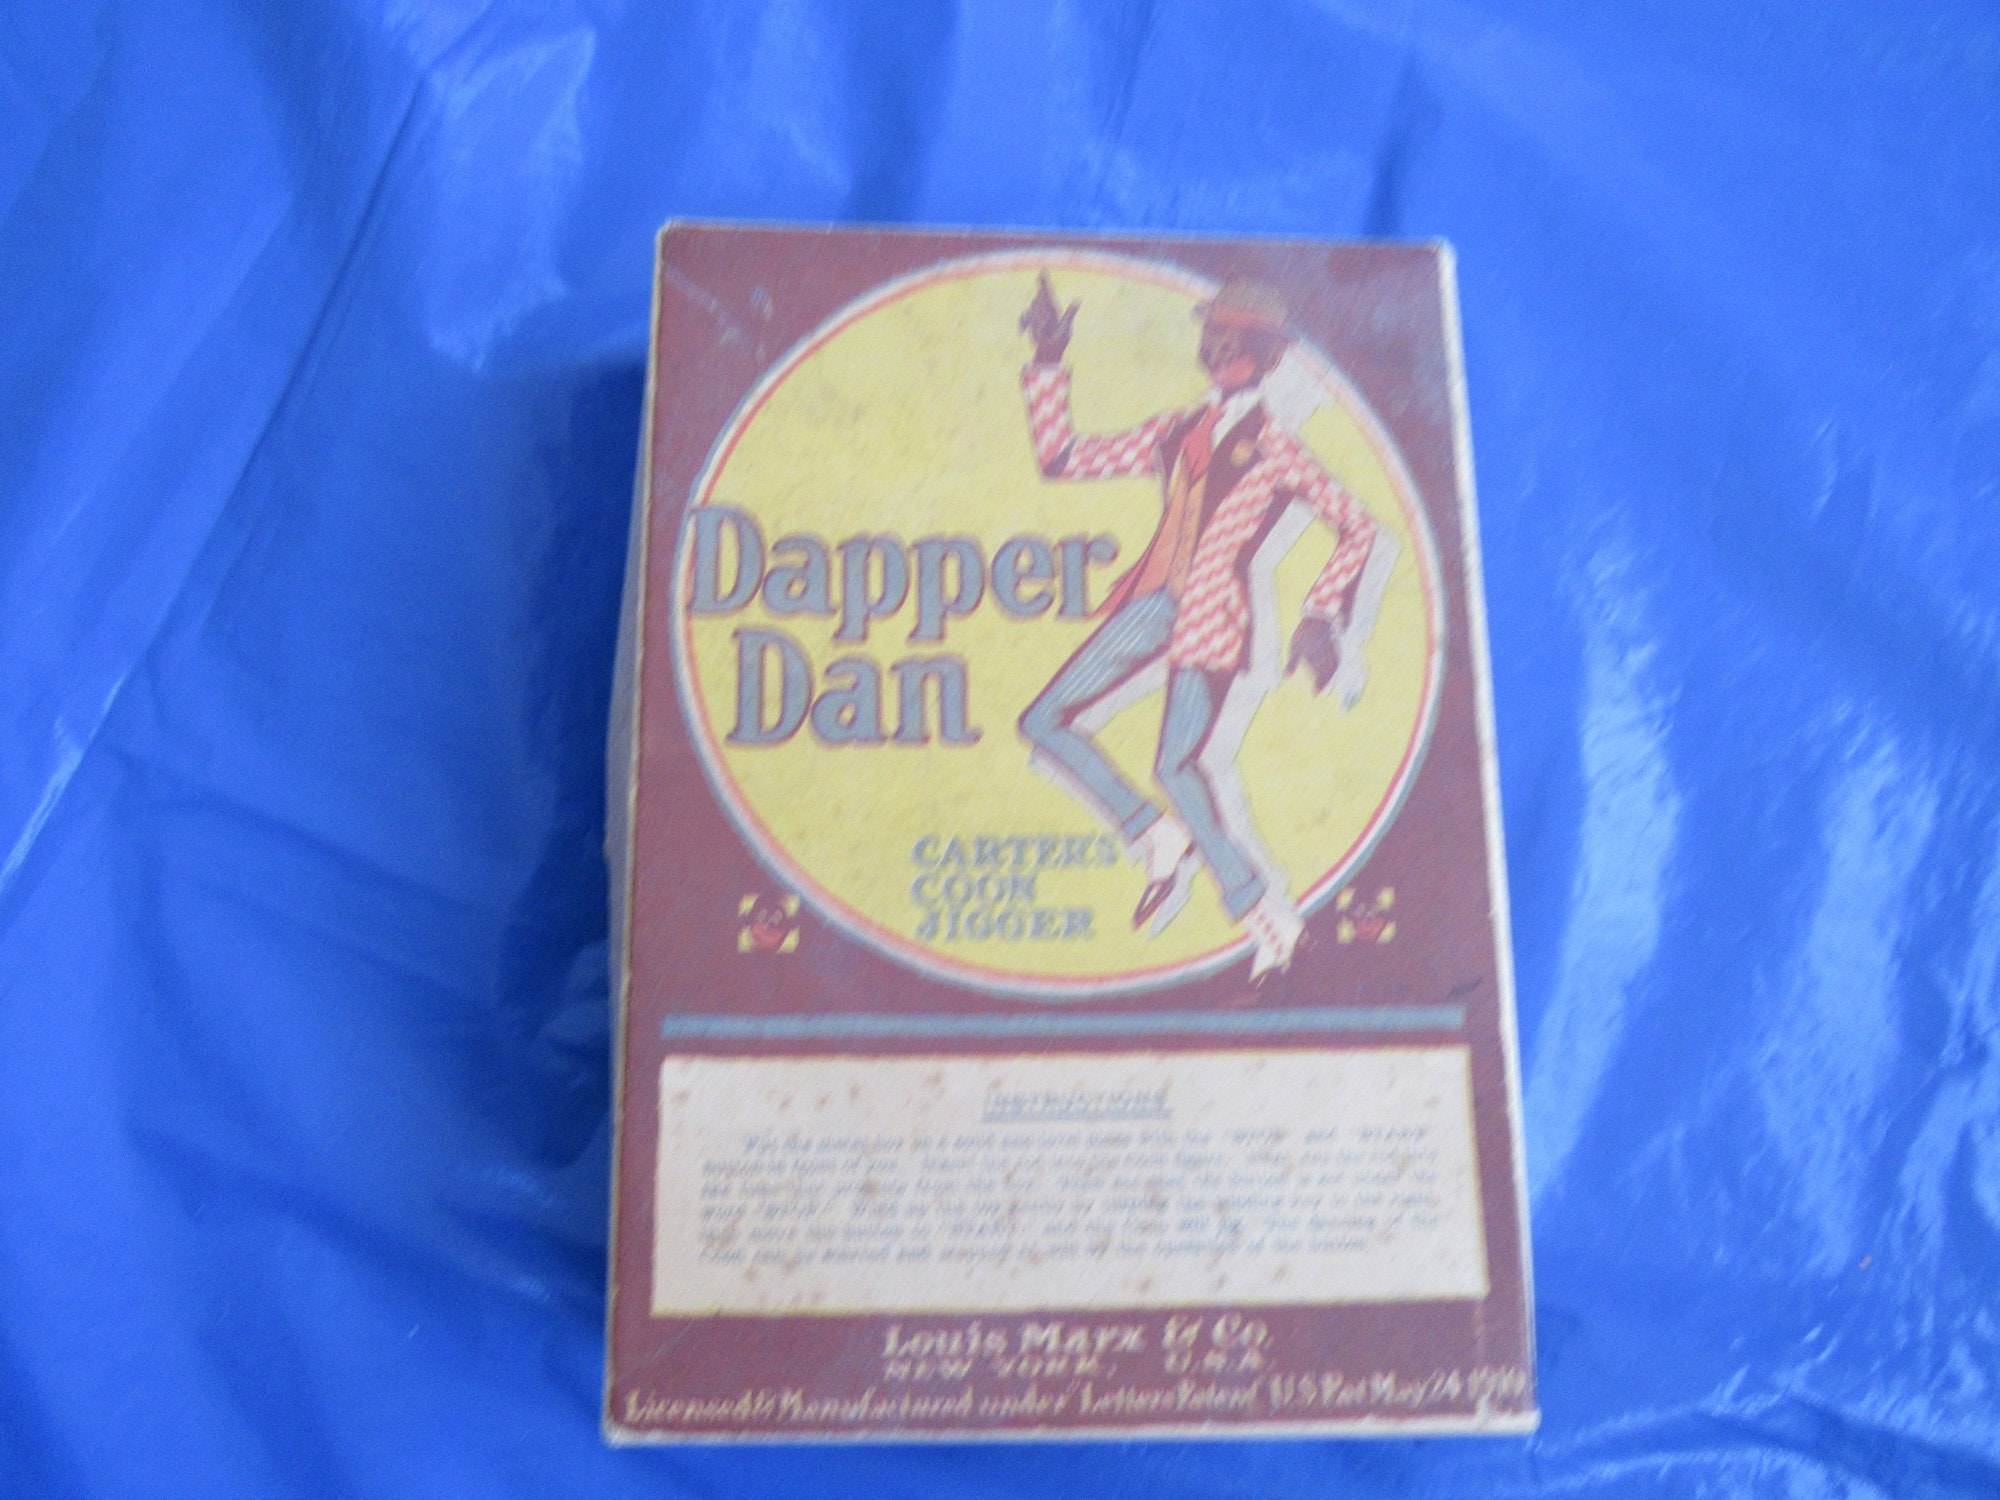 Dapper Dan – Filthy Rebena Vintage